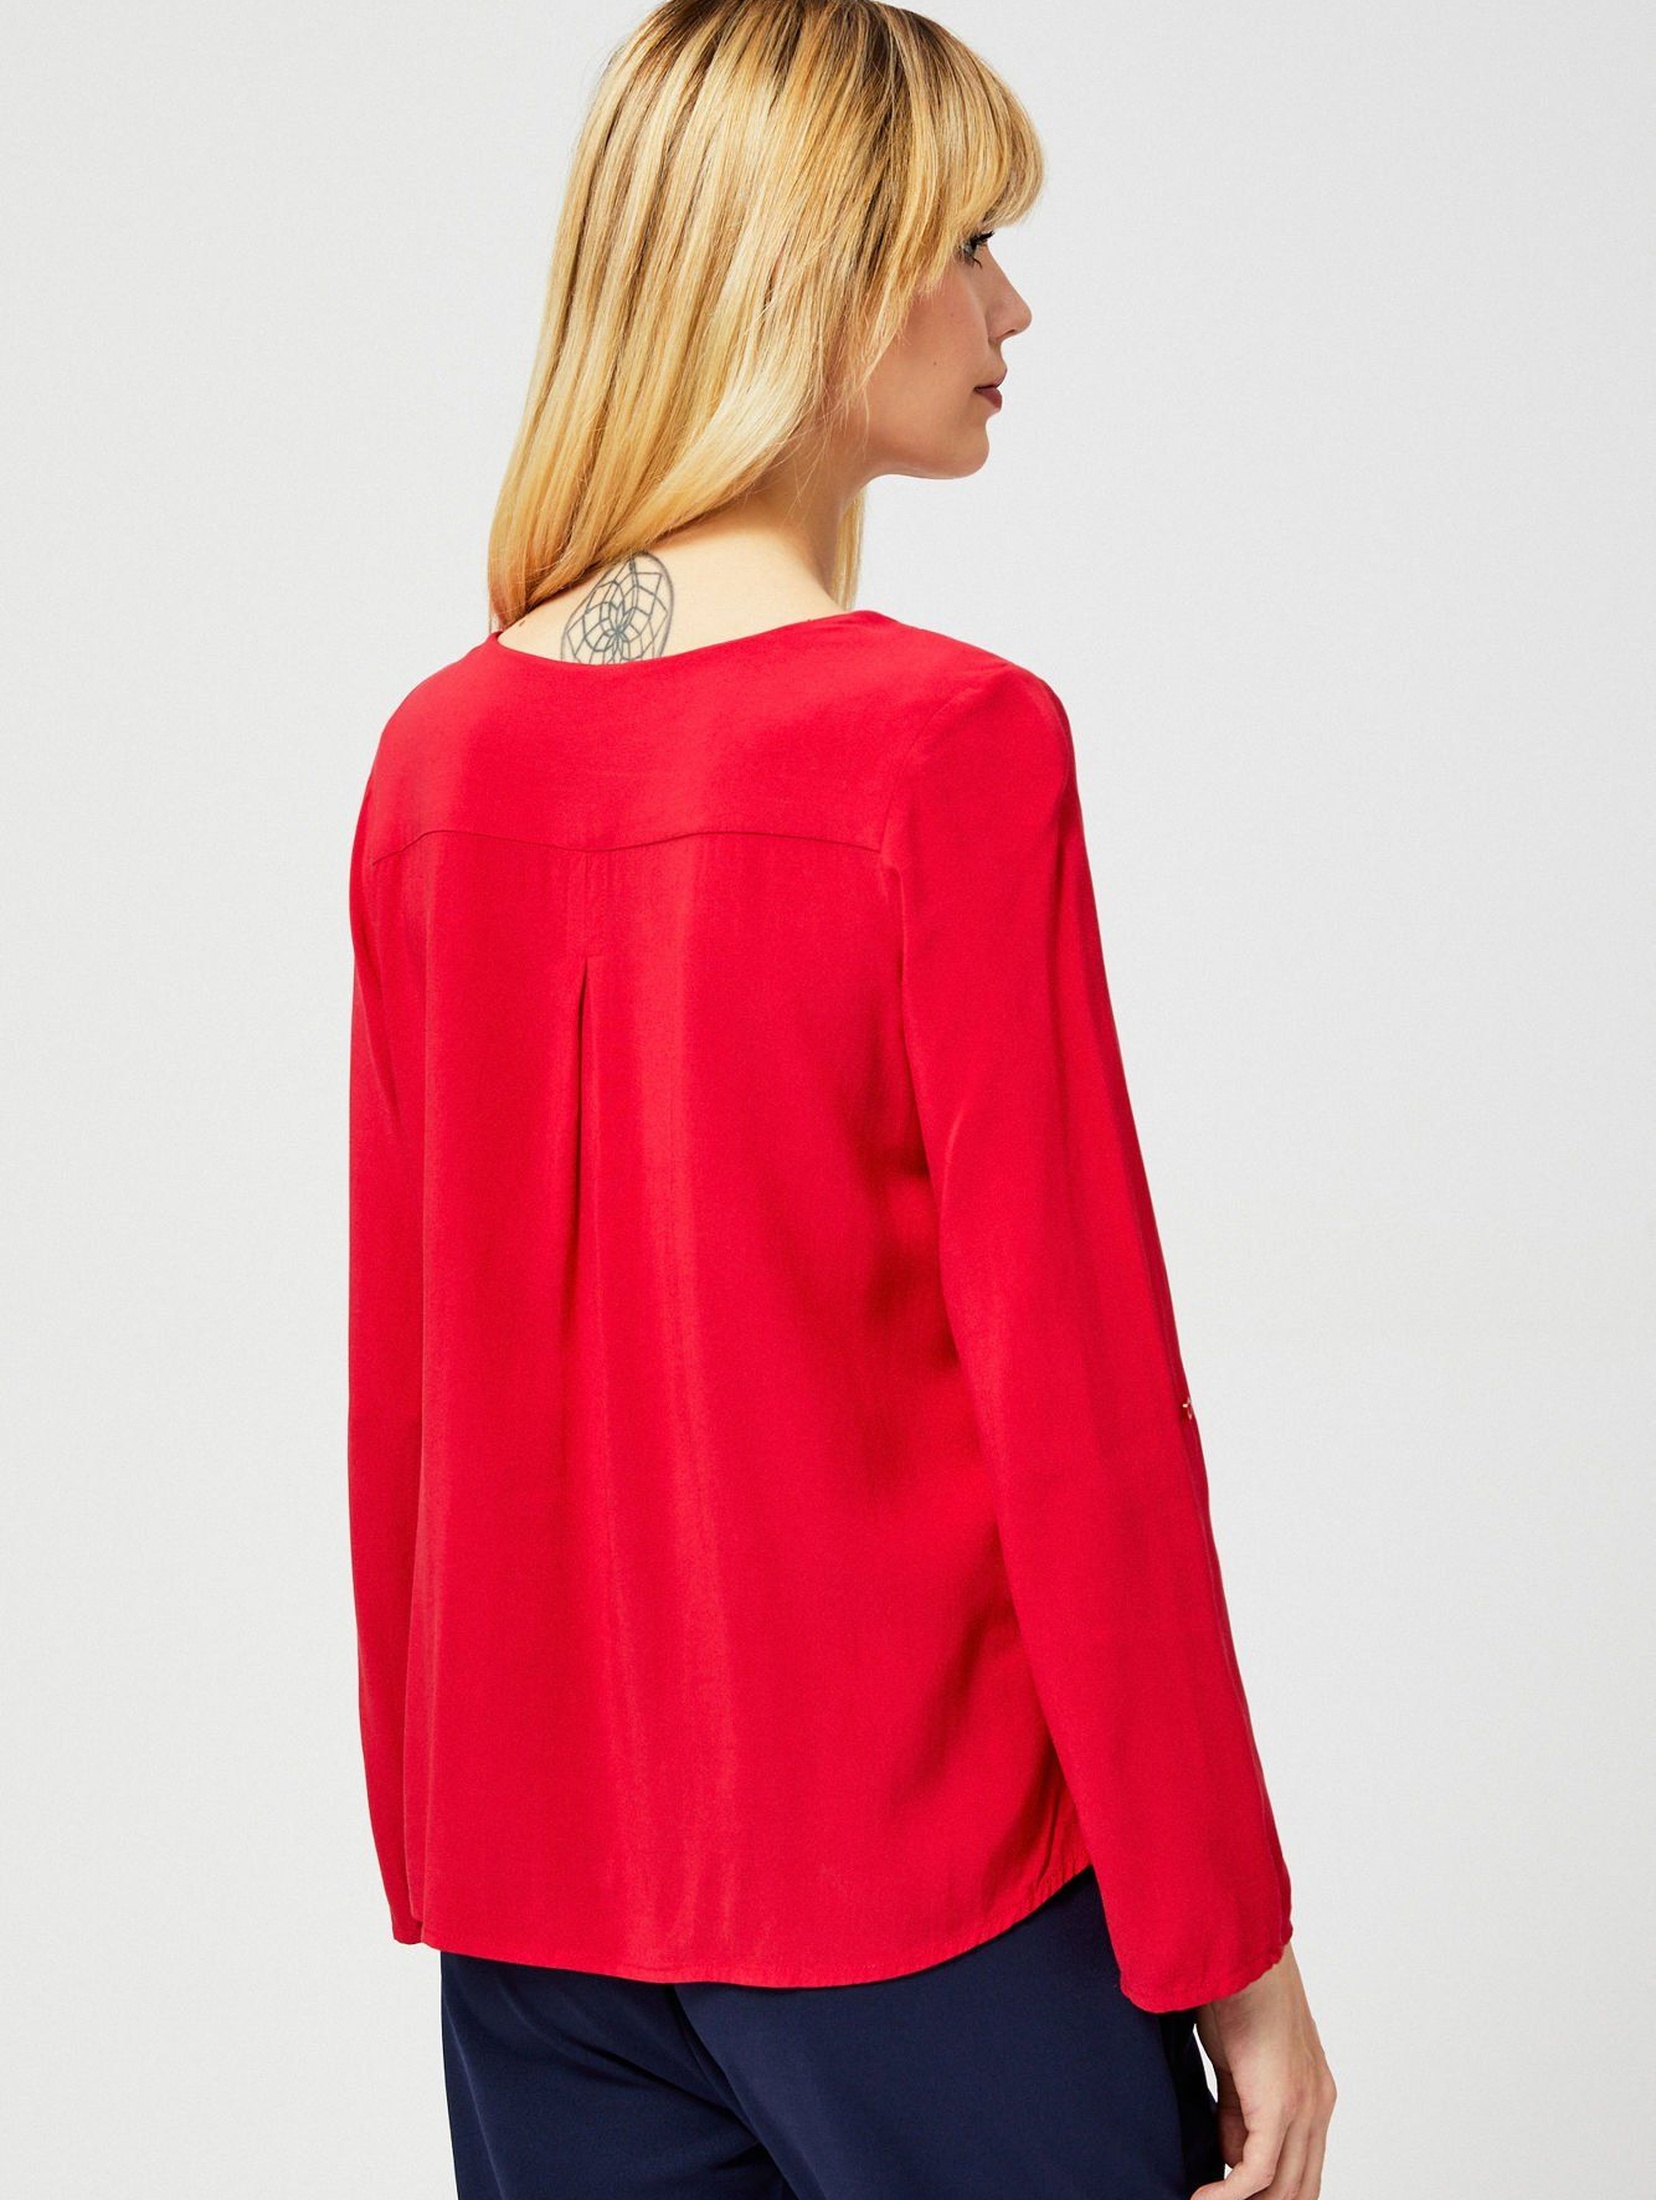 Czarwona bluzka damska z długim rękawem